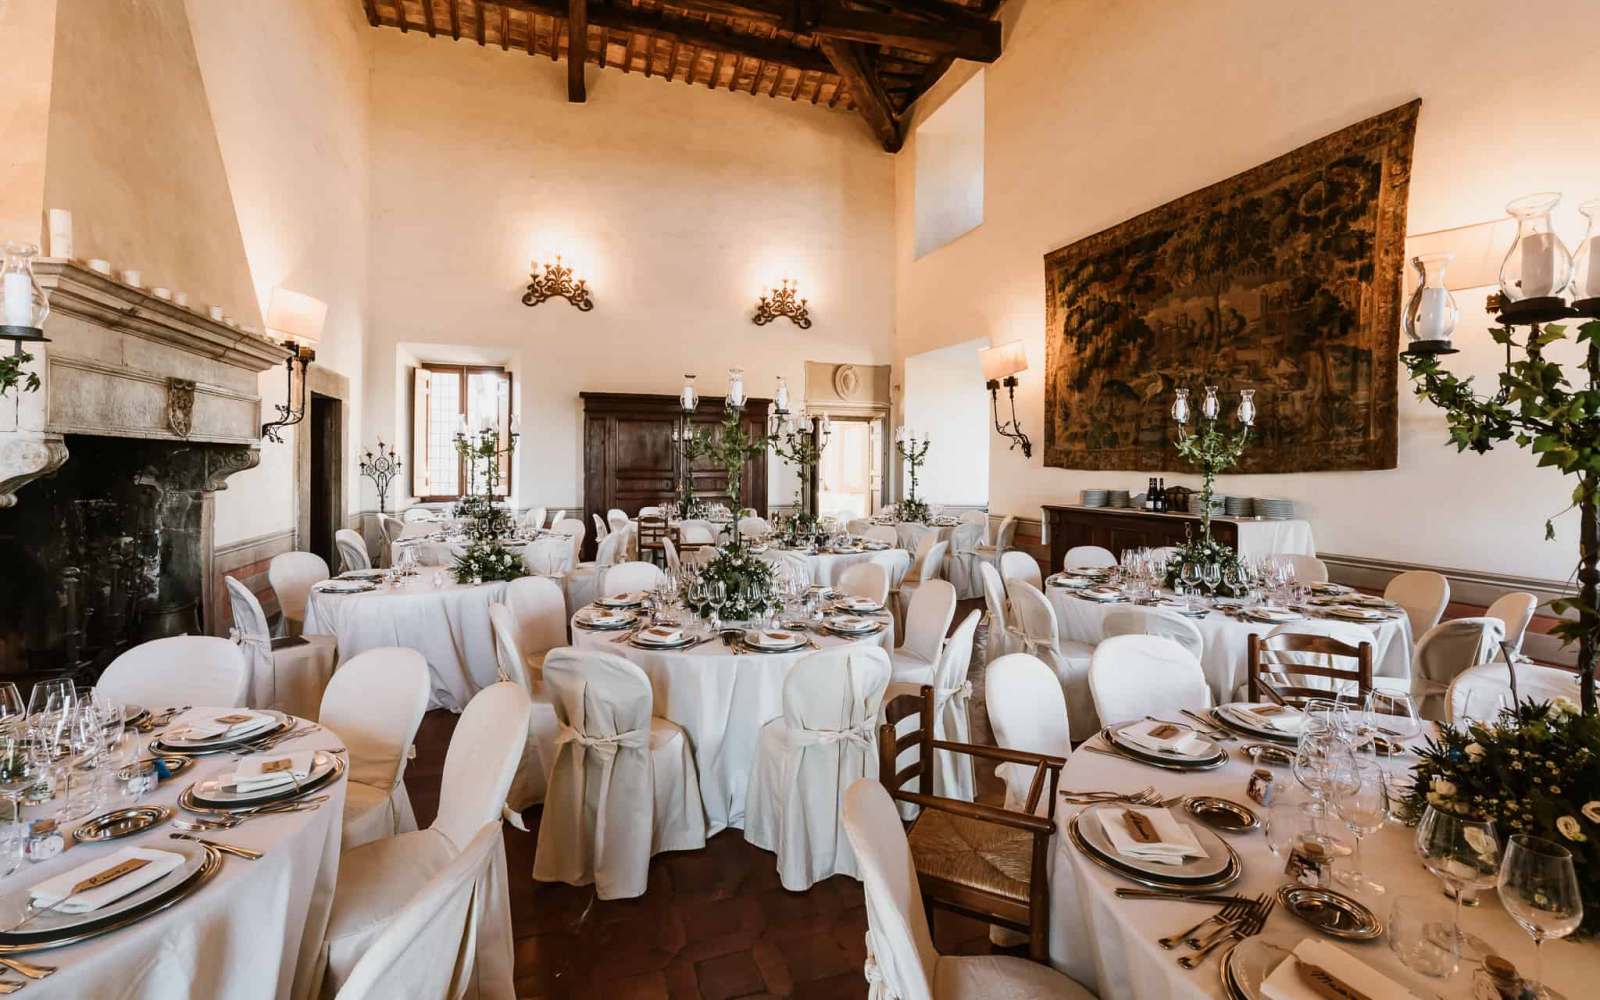 sala del castello farnese a roma allestita per cerimonia con tavoli apparecchiati in bianco con fiori, segnaposto